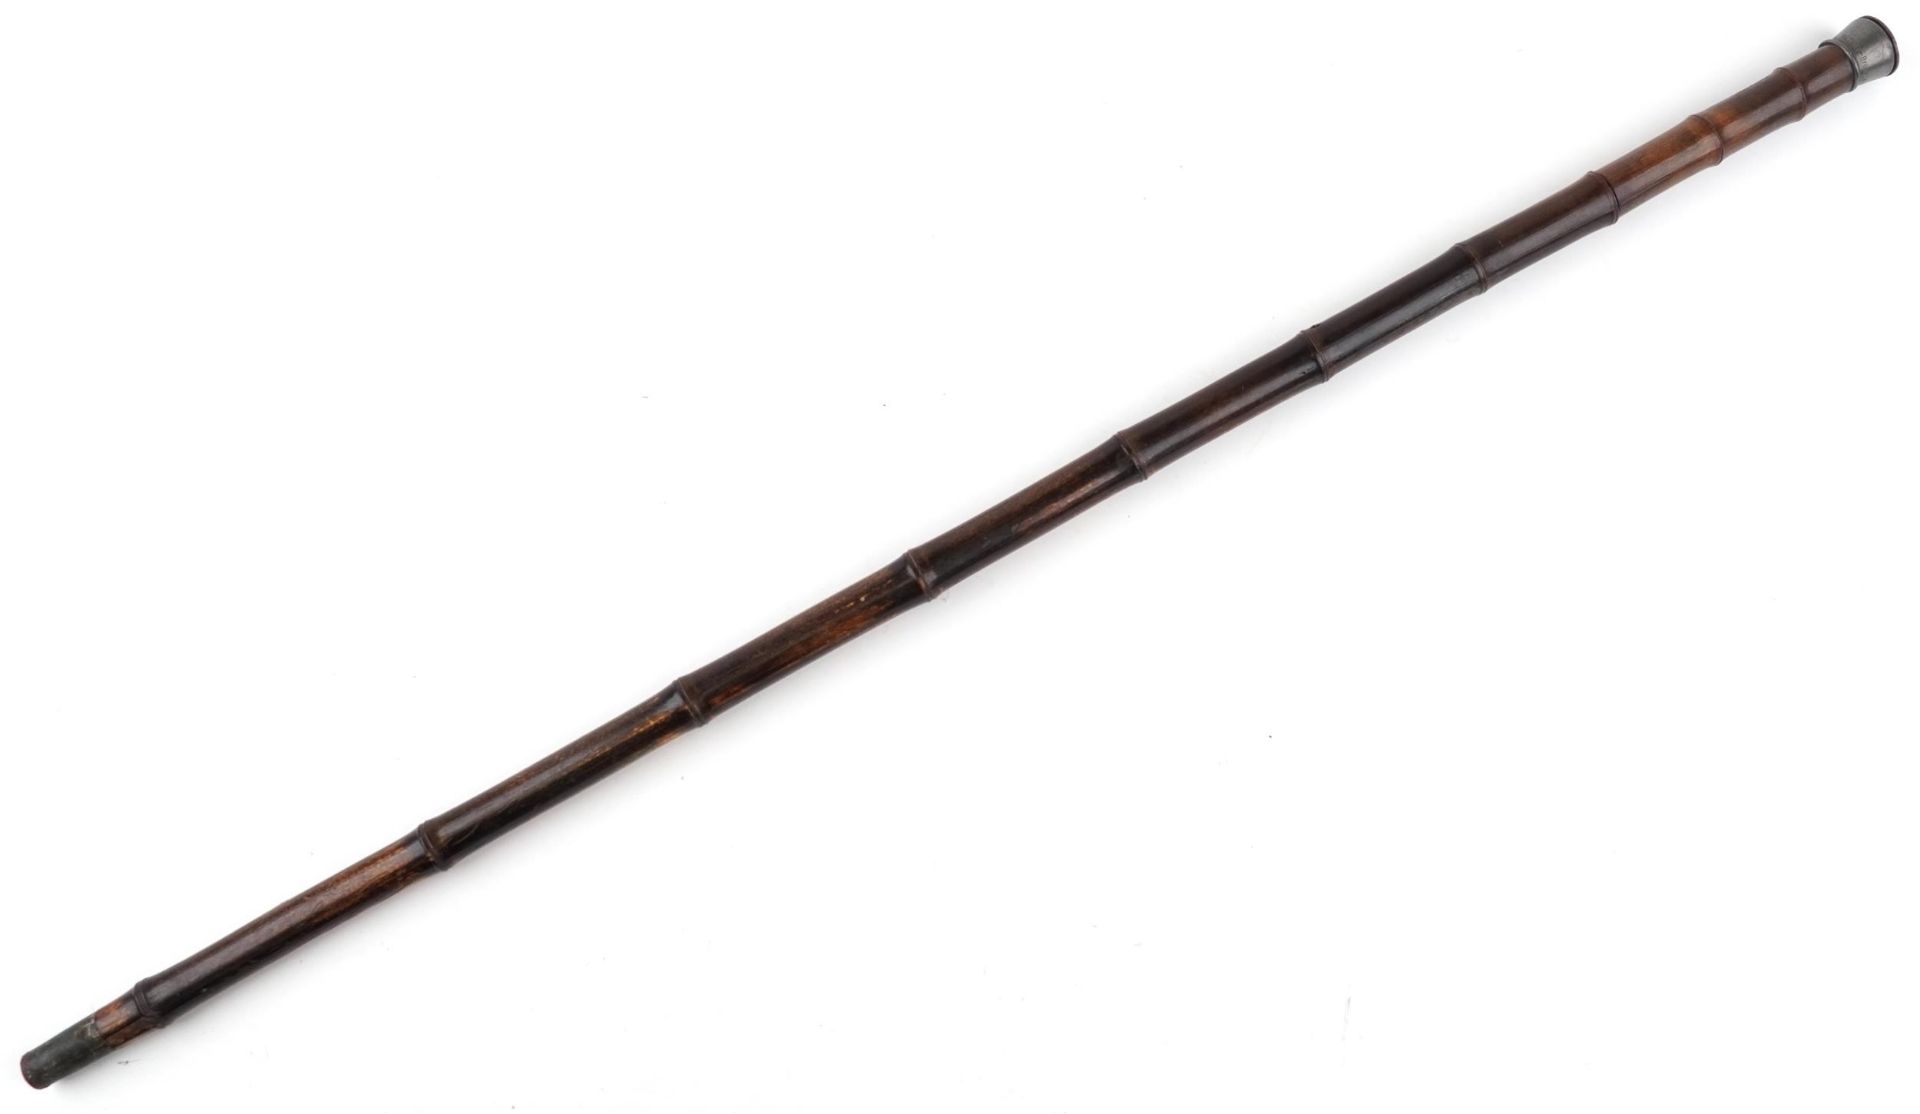 19th century bamboo single shot walking stick gun with pewter mount impressed Patent Brevete SGDG, - Bild 3 aus 6